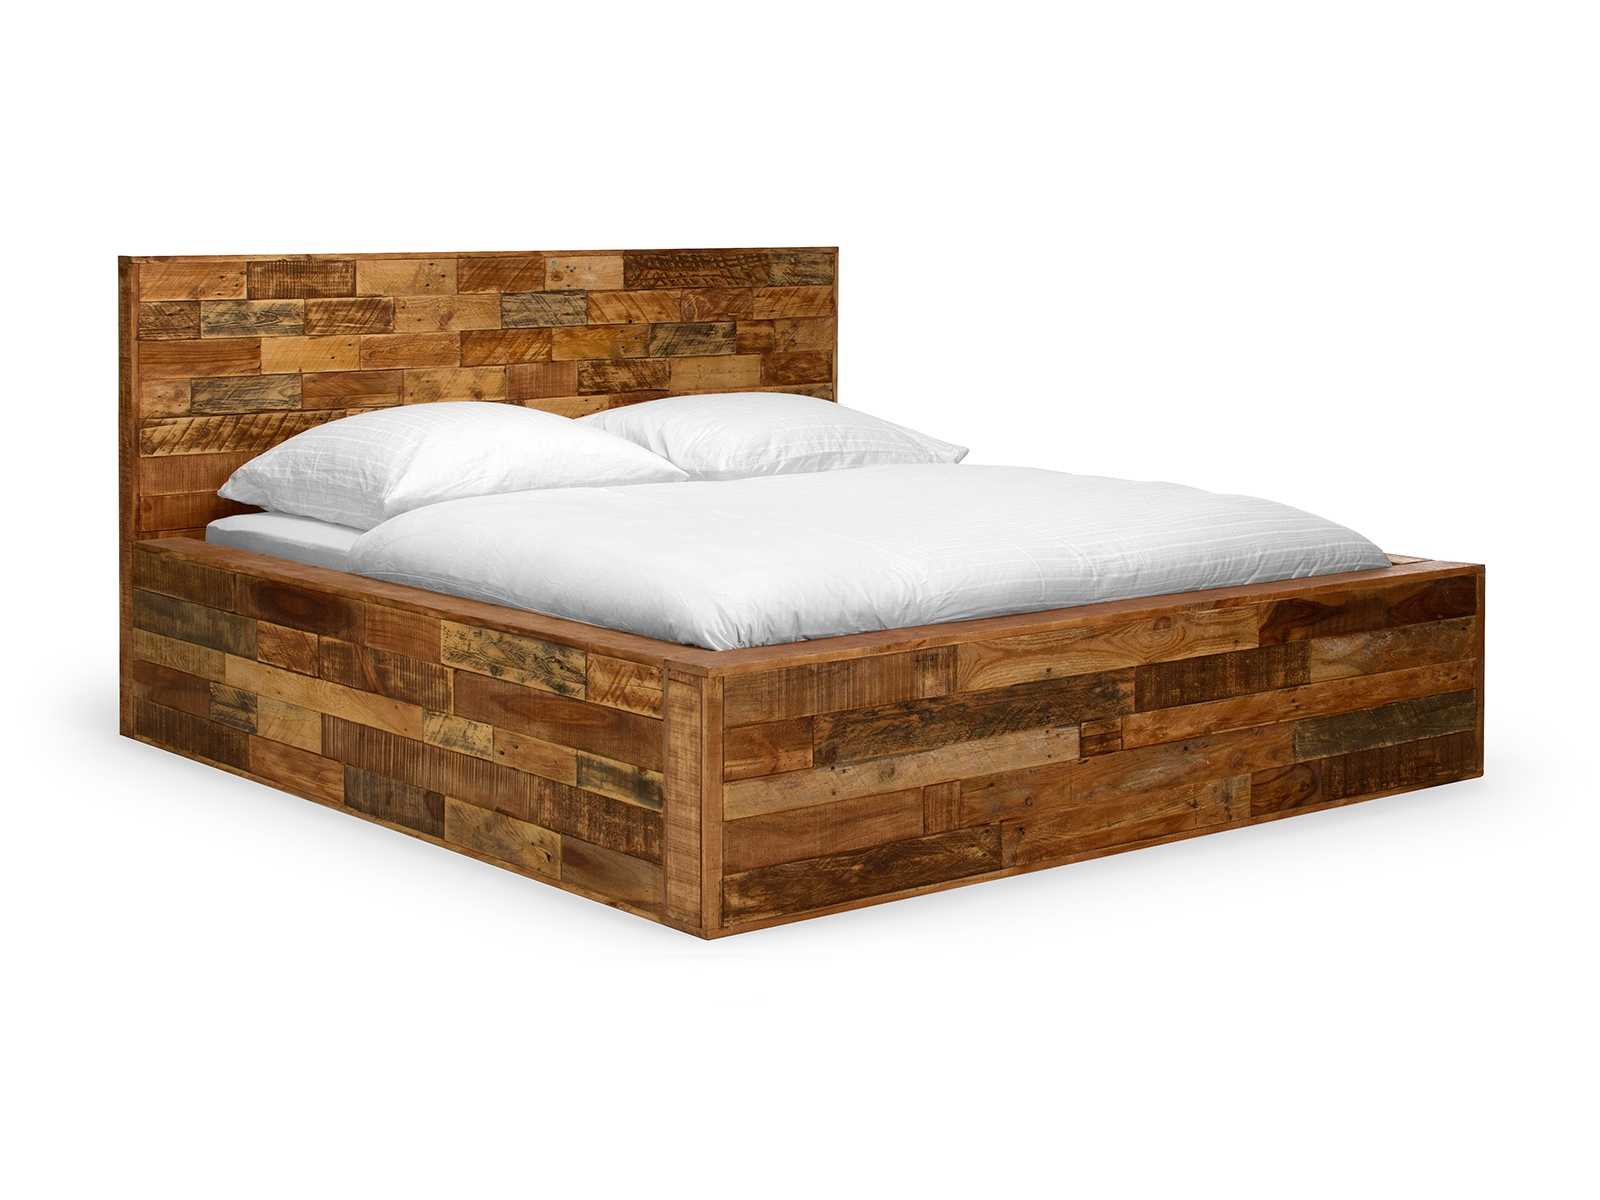 Dřevěná postel hnědá Sierra